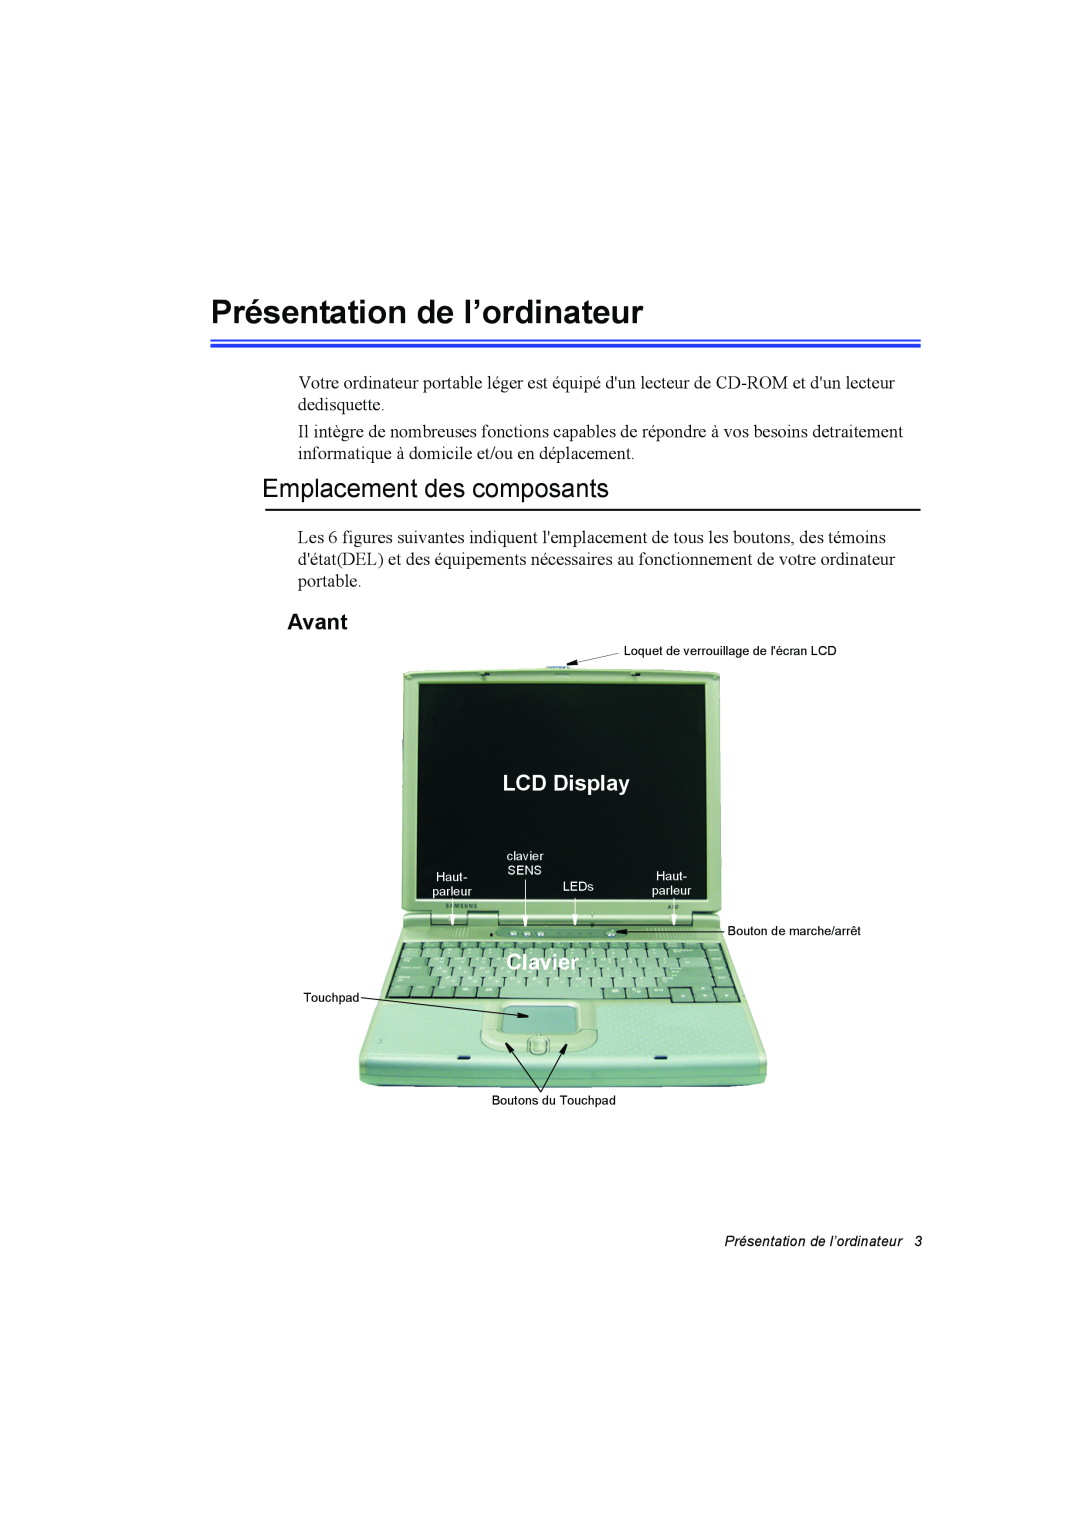 Samsung NA10AJ0041/SUK manual Présentation de l’ordinateur, Emplacement des composants, Avant, LCD Display, Clavier 